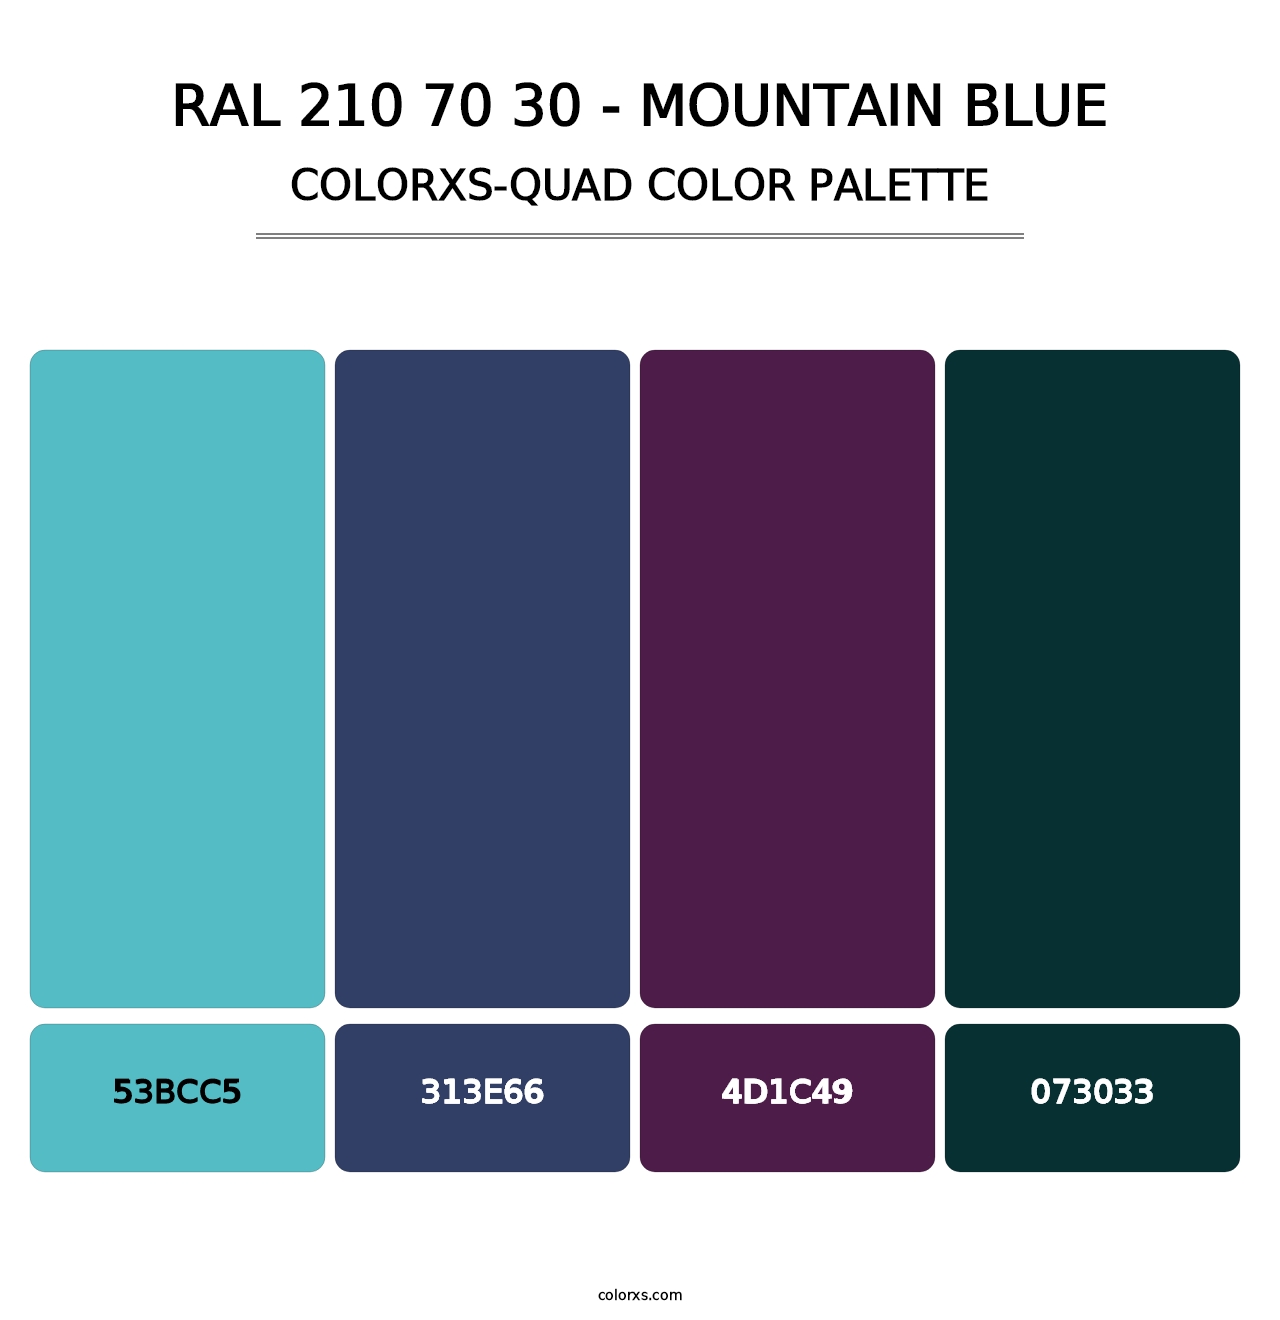 RAL 210 70 30 - Mountain Blue - Colorxs Quad Palette